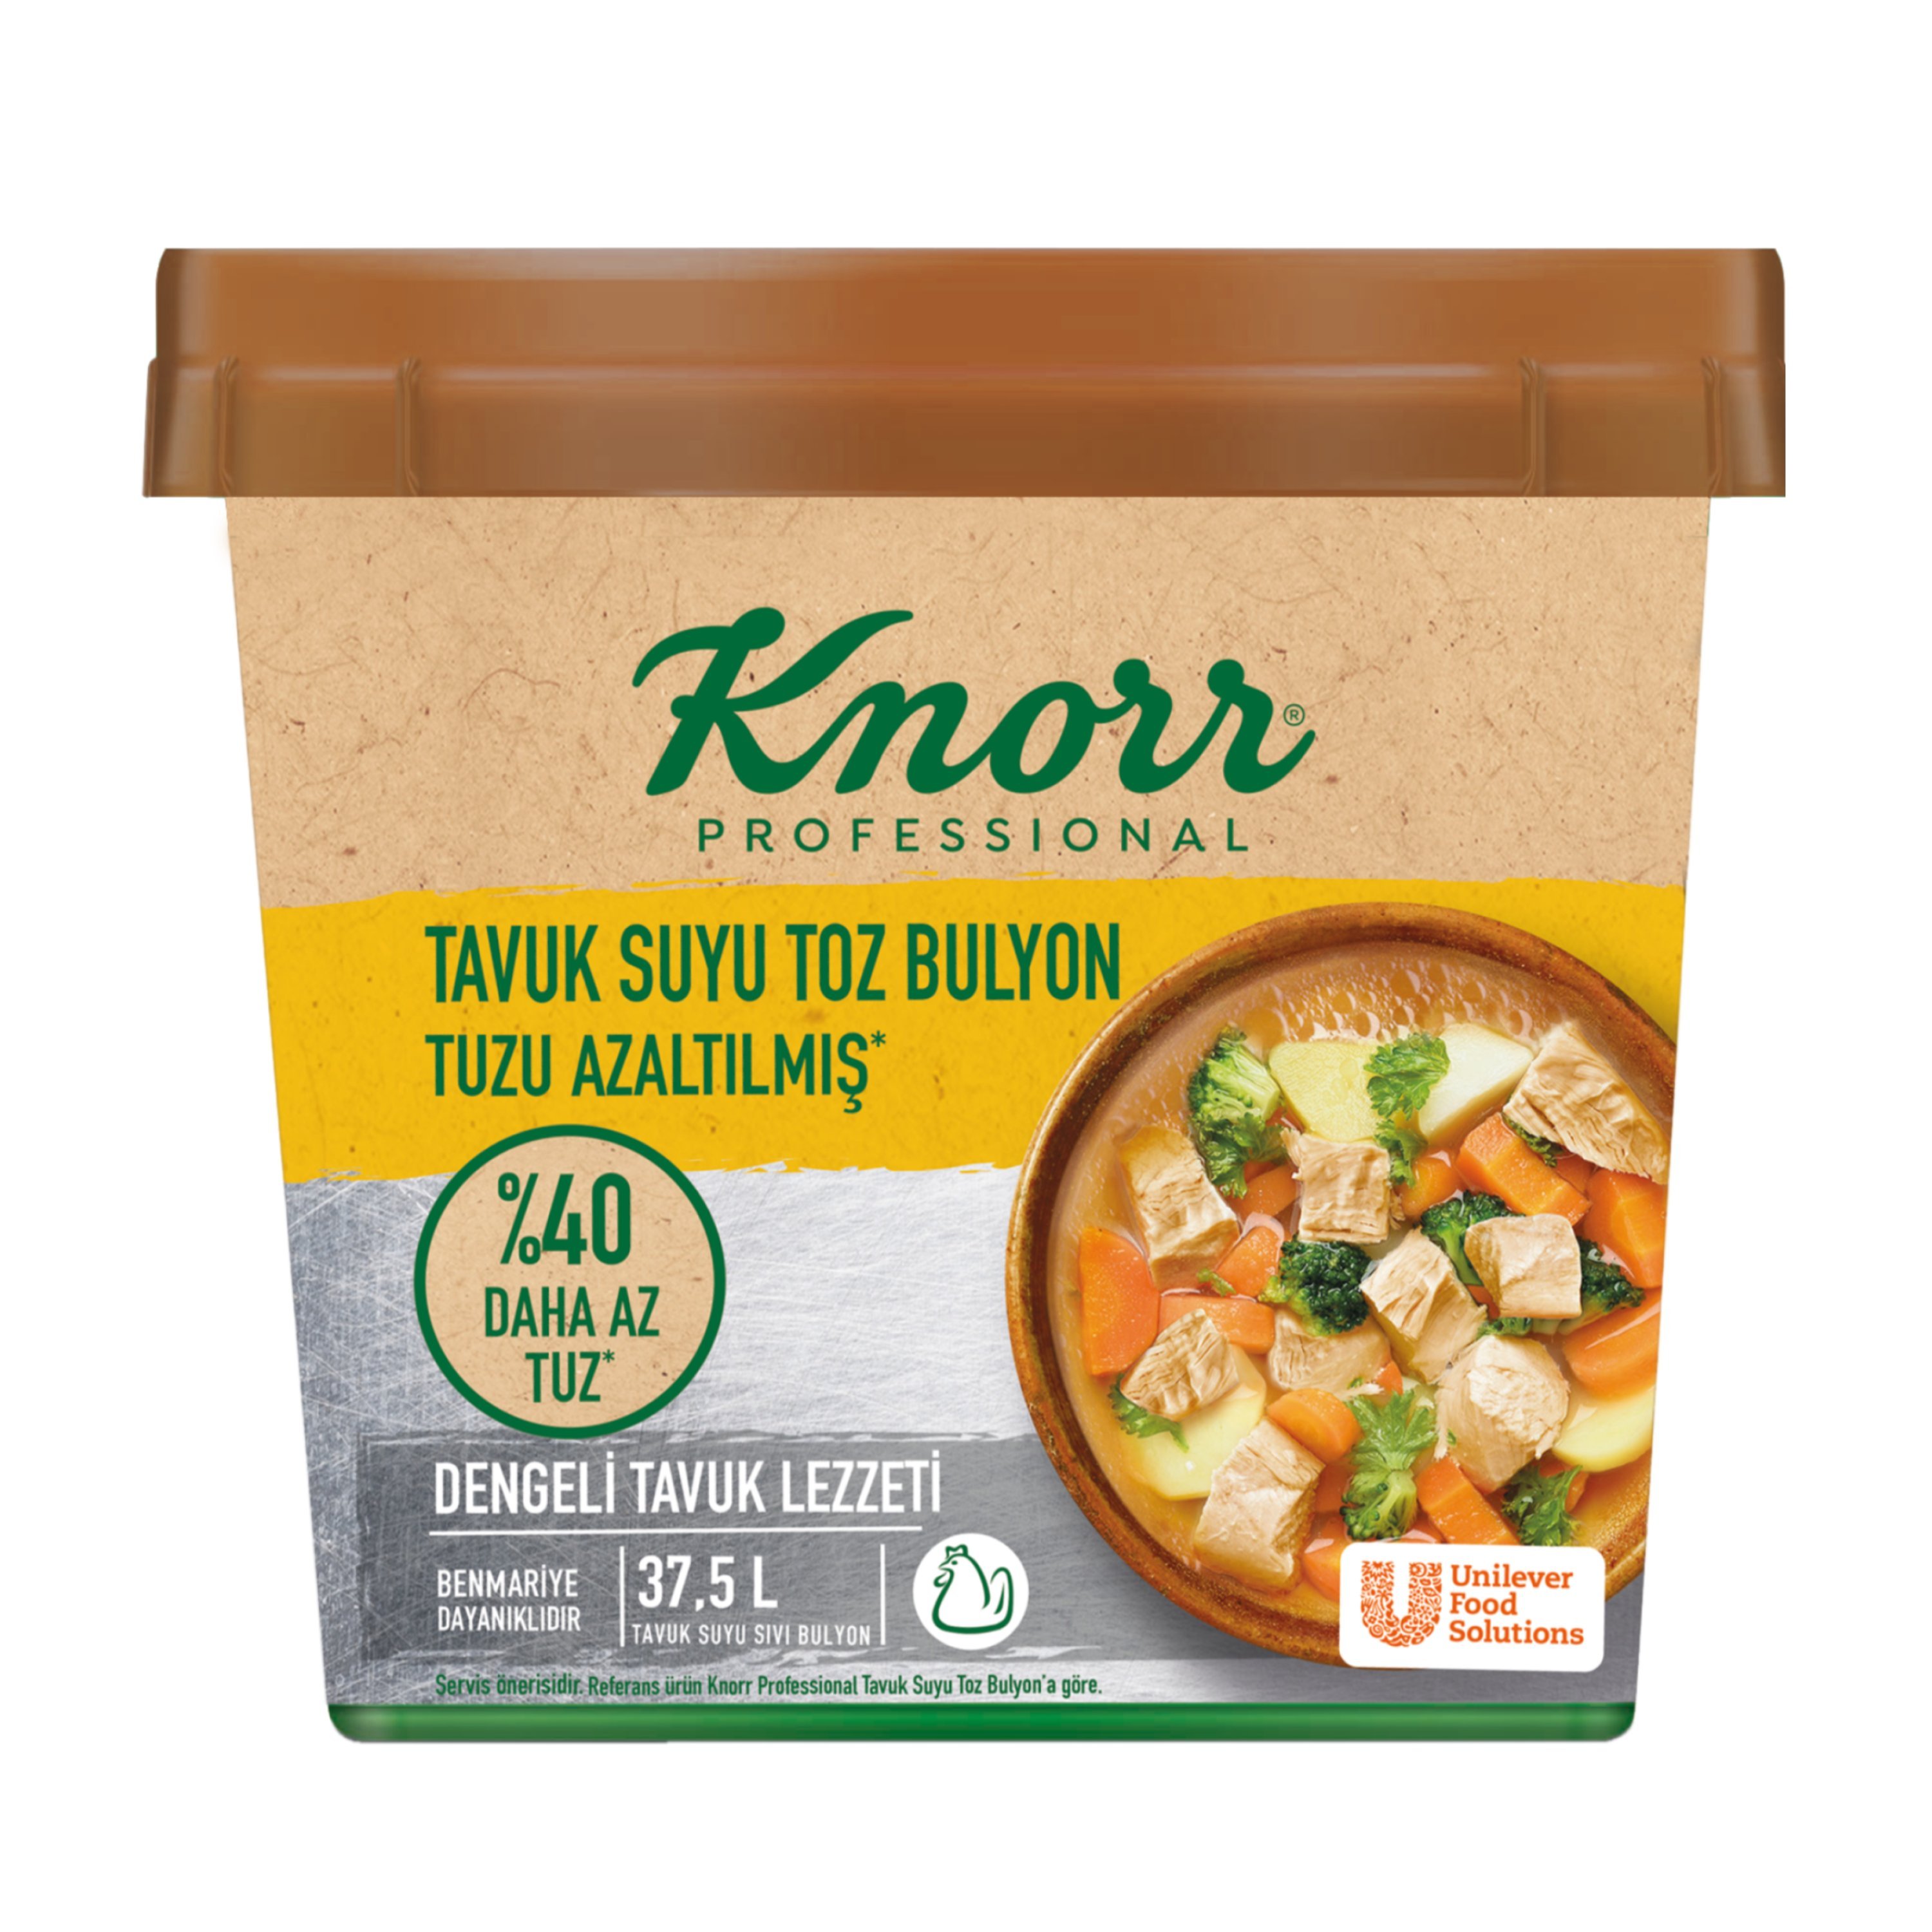 Knorr Tuzu Azaltılmış Tavuk Bulyon 750 g - 